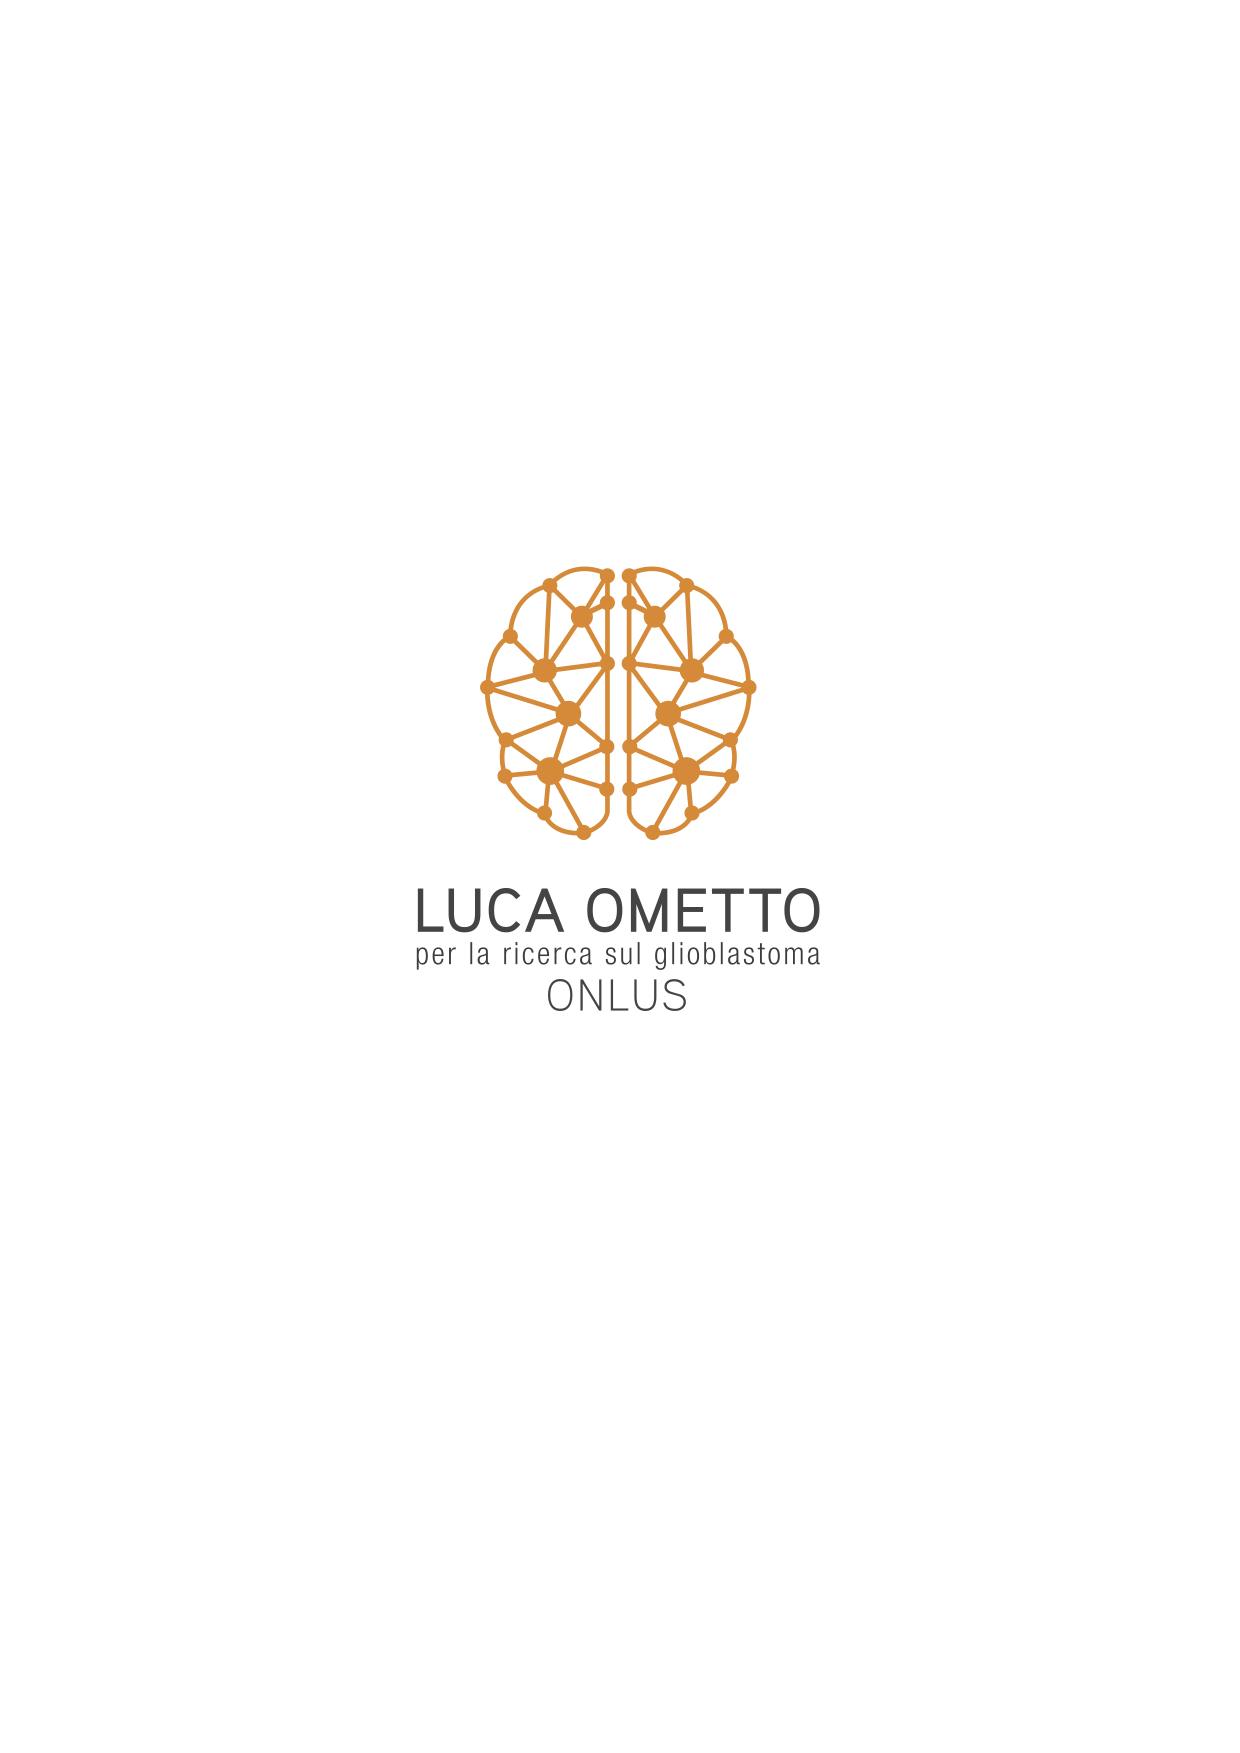 DONA E CORRI PER LUCA-Associazione Luca Ometto